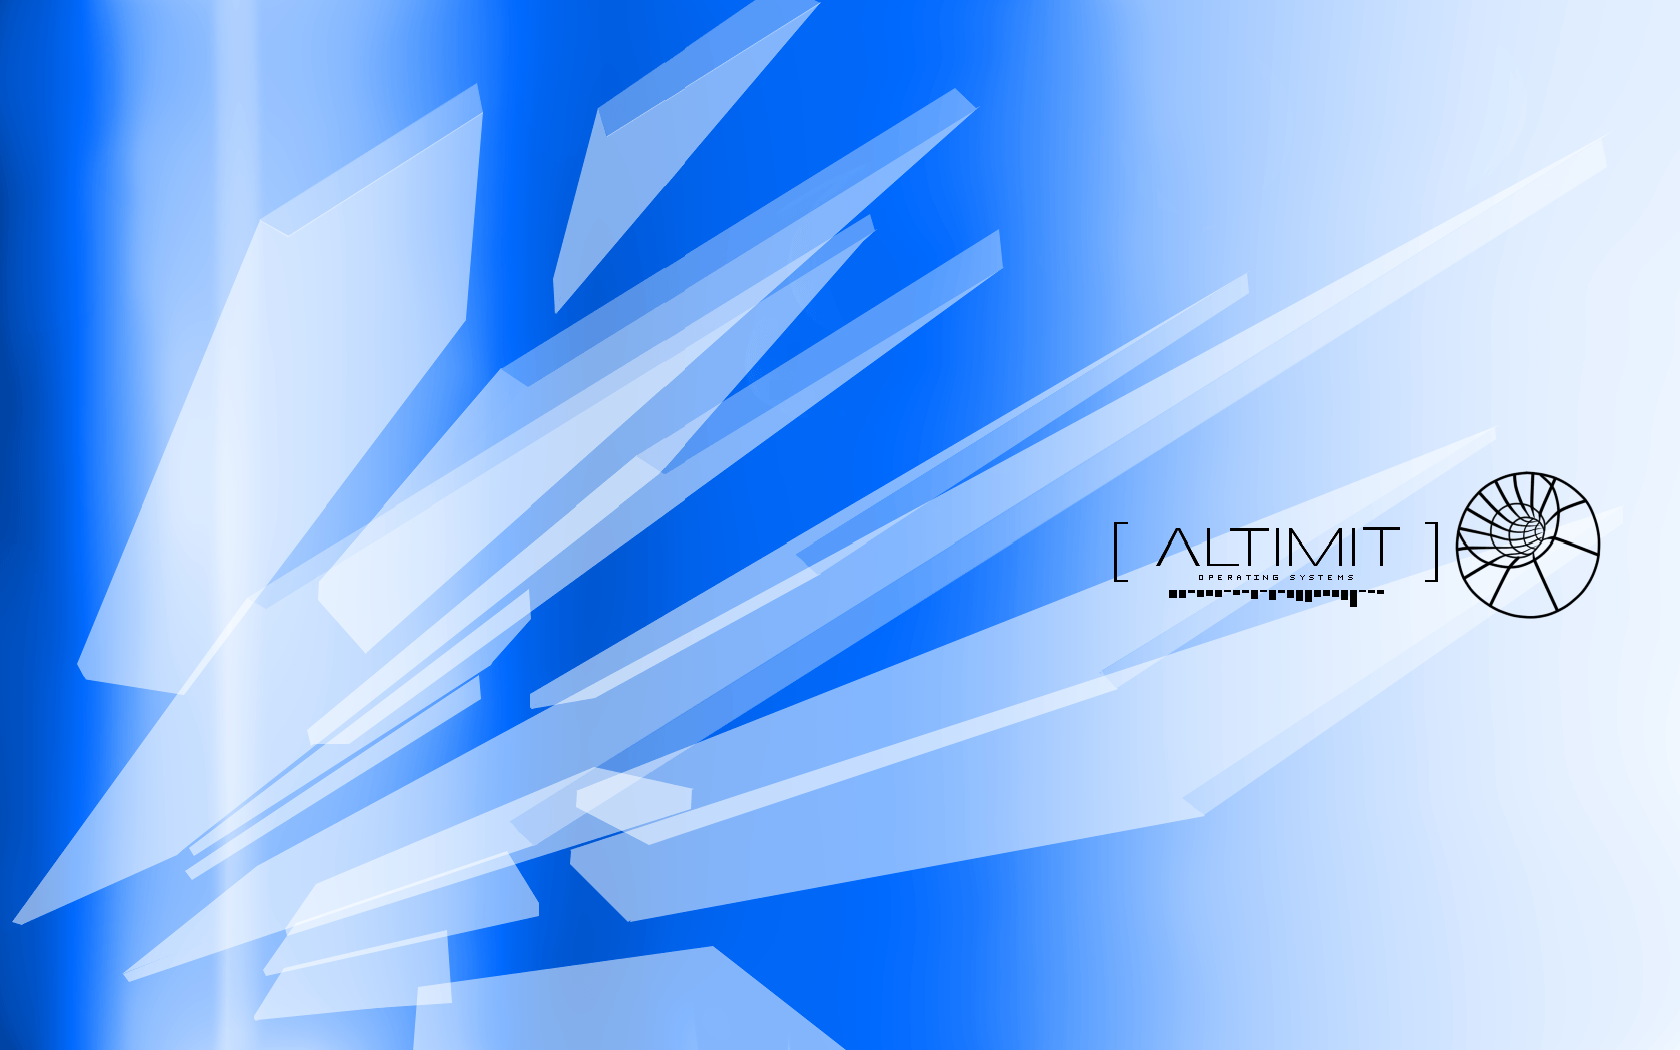 Hack//ALTIMIT Wallpaper: Blue